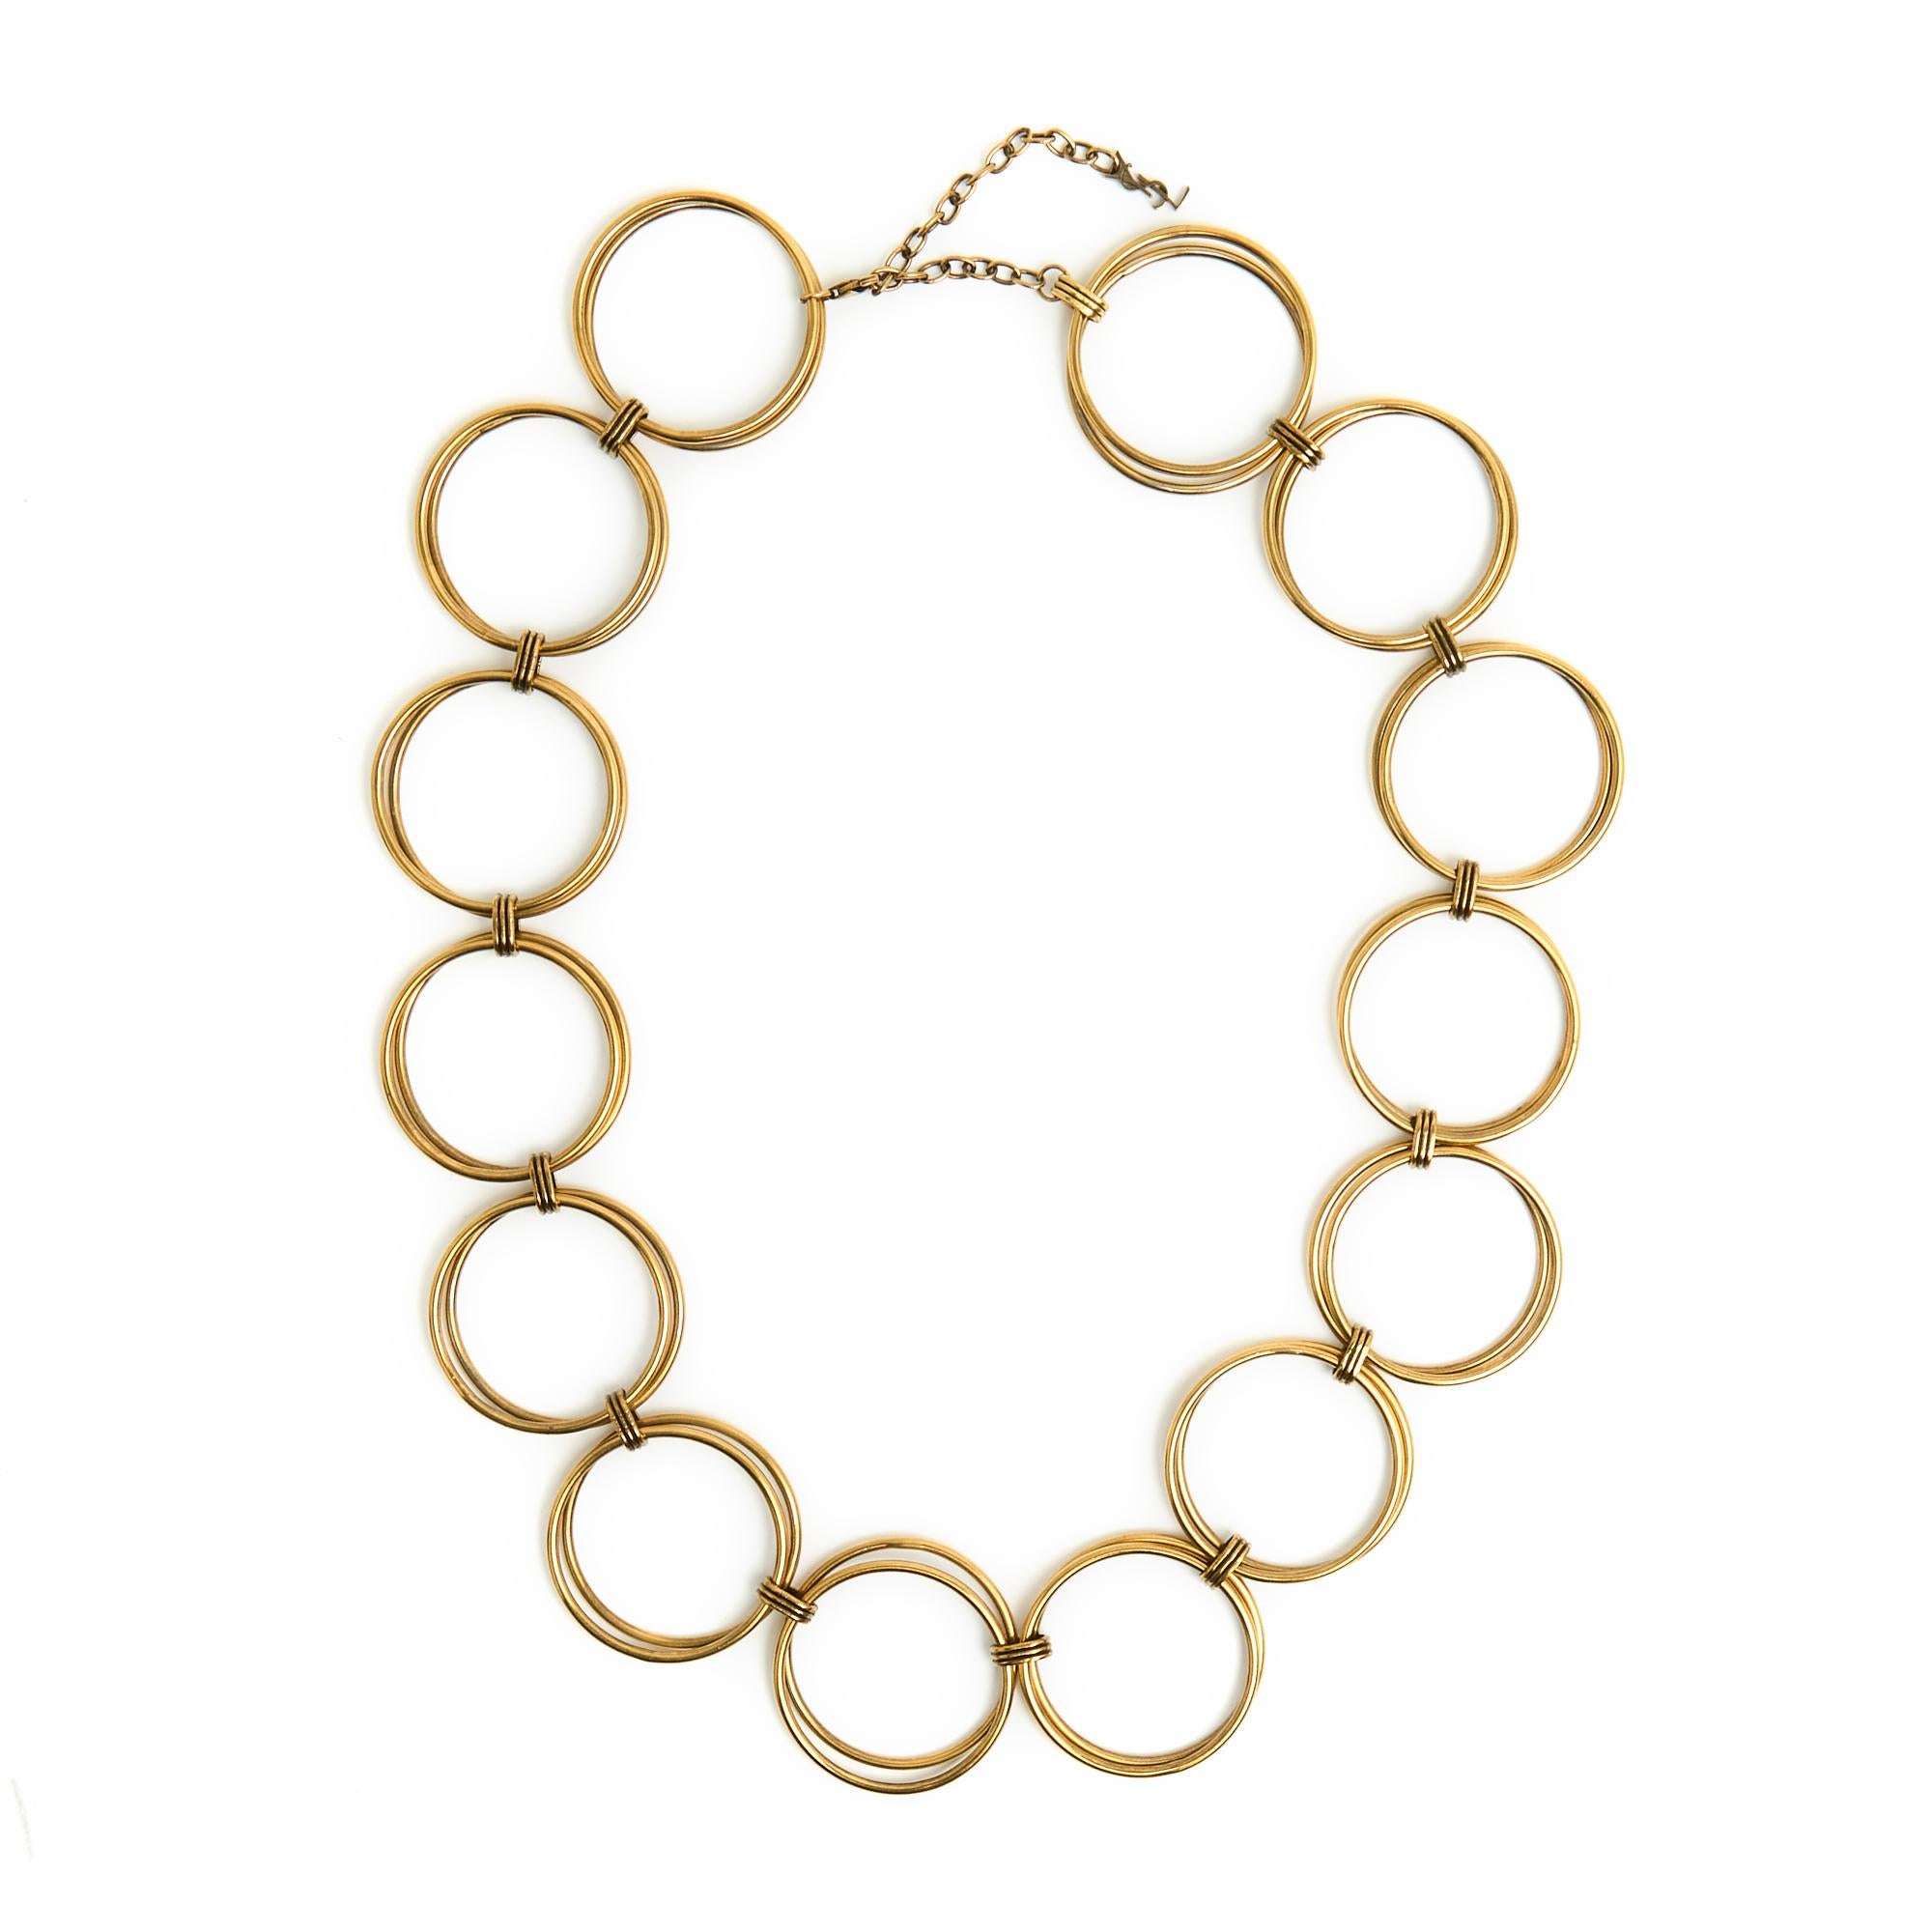 Saint Laurent-Halskette aus großen, runden, gefütterten Ringen, Karabinerverschluss an einer Kette und einem YSL-Logo. Gesamtlänge der Halskette 68 cm, Verschluss von 59 bis 65 cm, Durchmesser der Ringe 3,5 cm. Die Halskette ist in sehr gutem